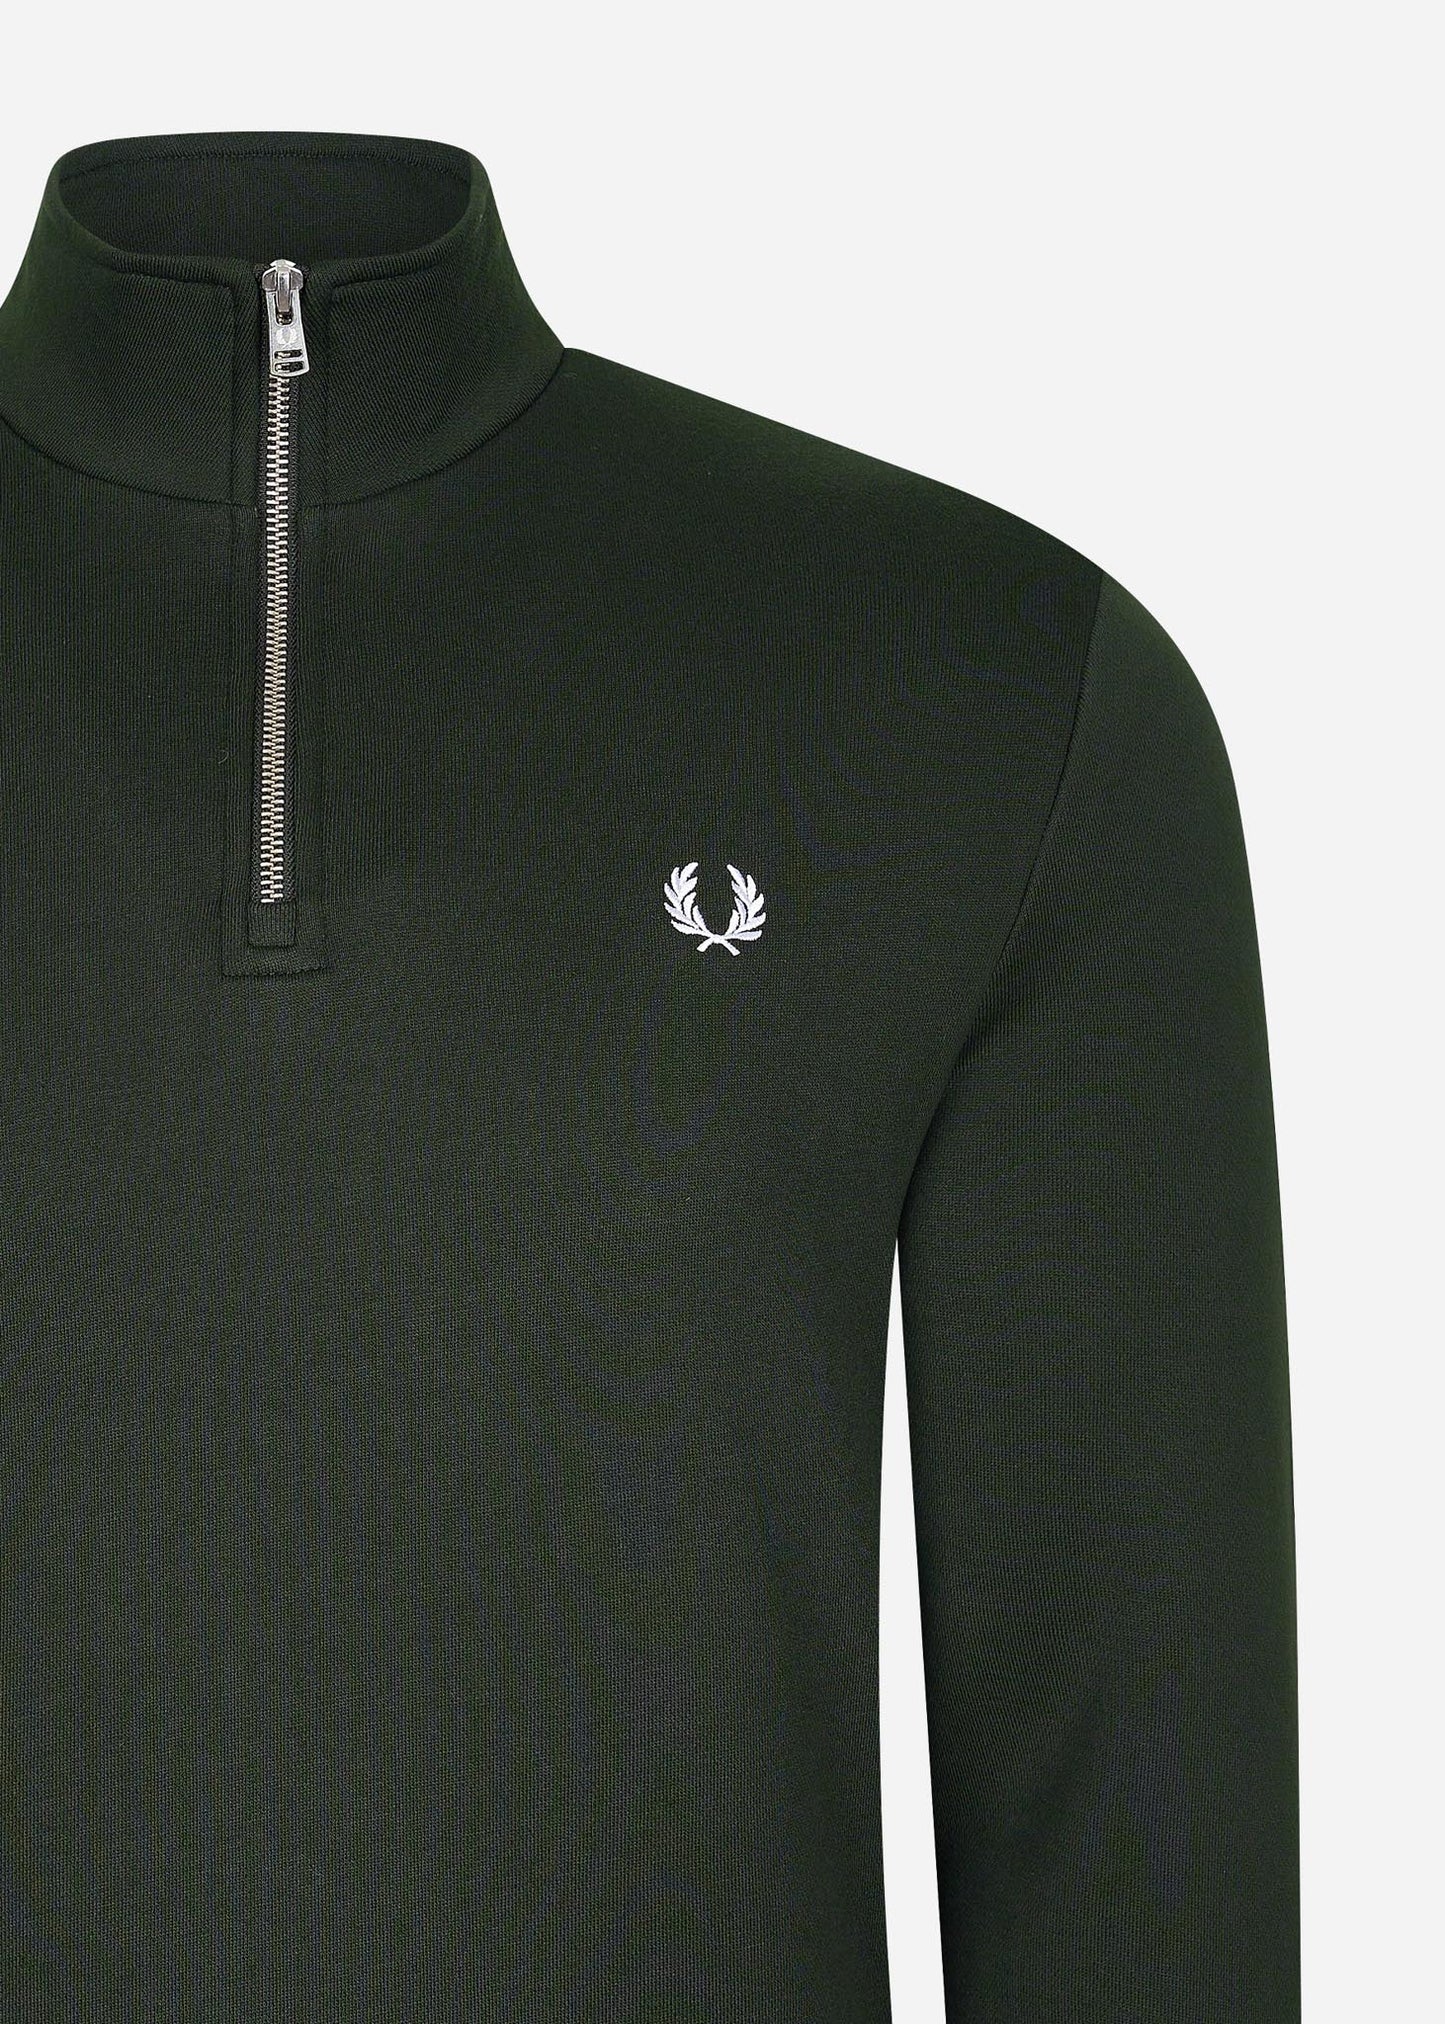 Fred Perry half-zip sweater green groen